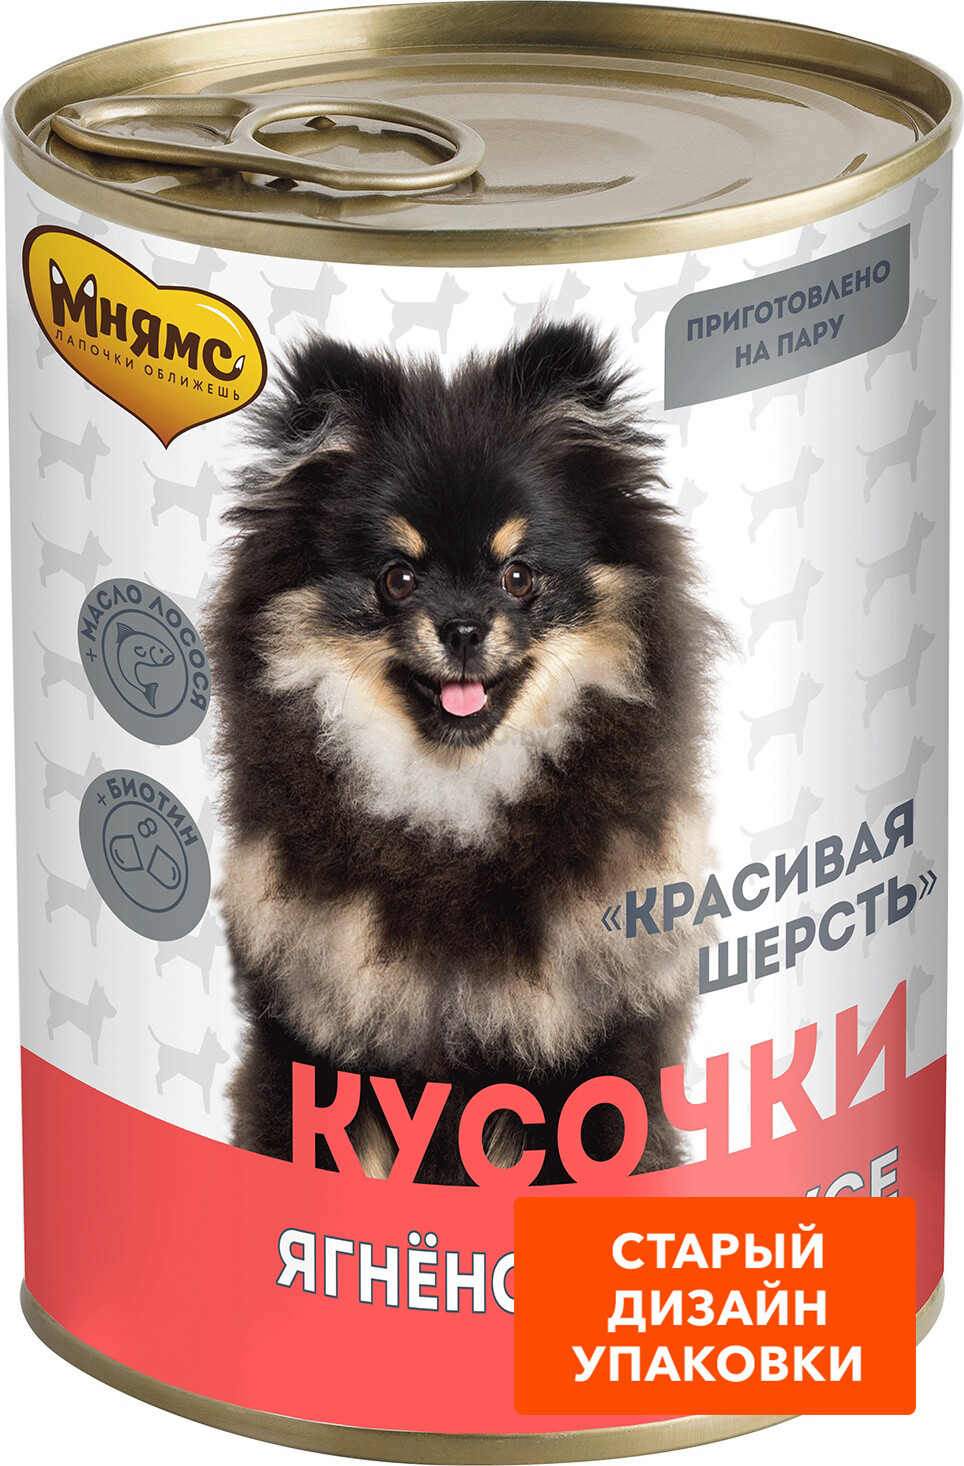 Влажный корм для собак МНЯМС Красивая шерсть ягненок в соусе консервы 400 г (704994) - Фото 6